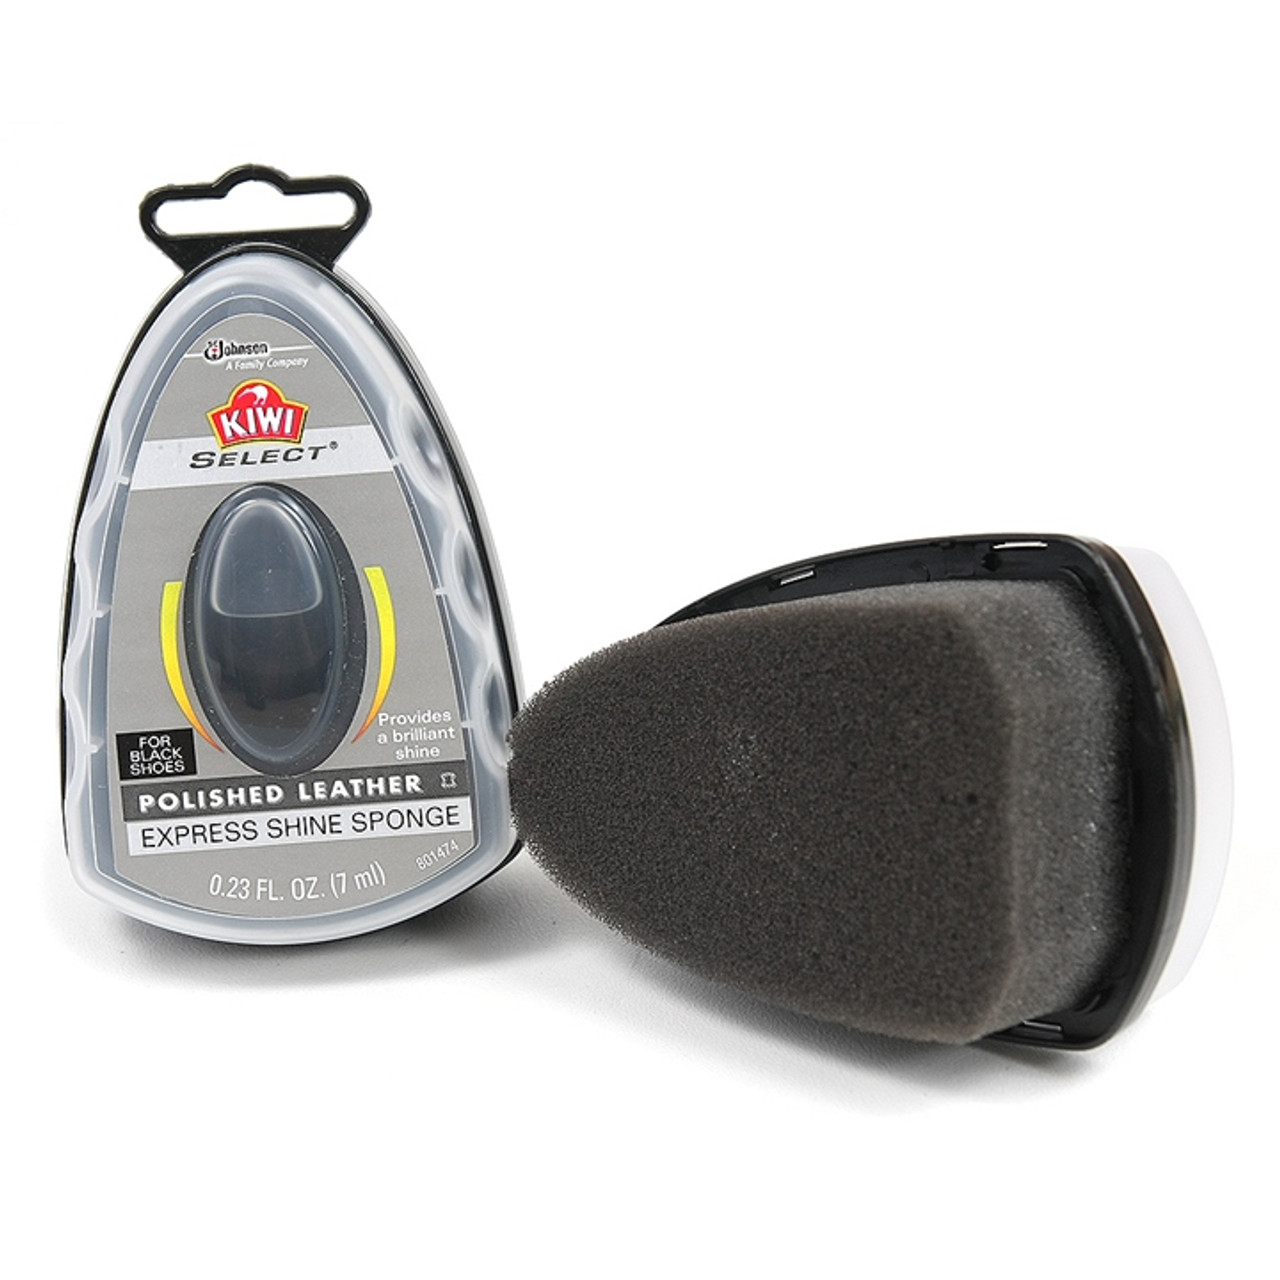 Kiwi Shoe polish sponge, Black, 0.2 oz